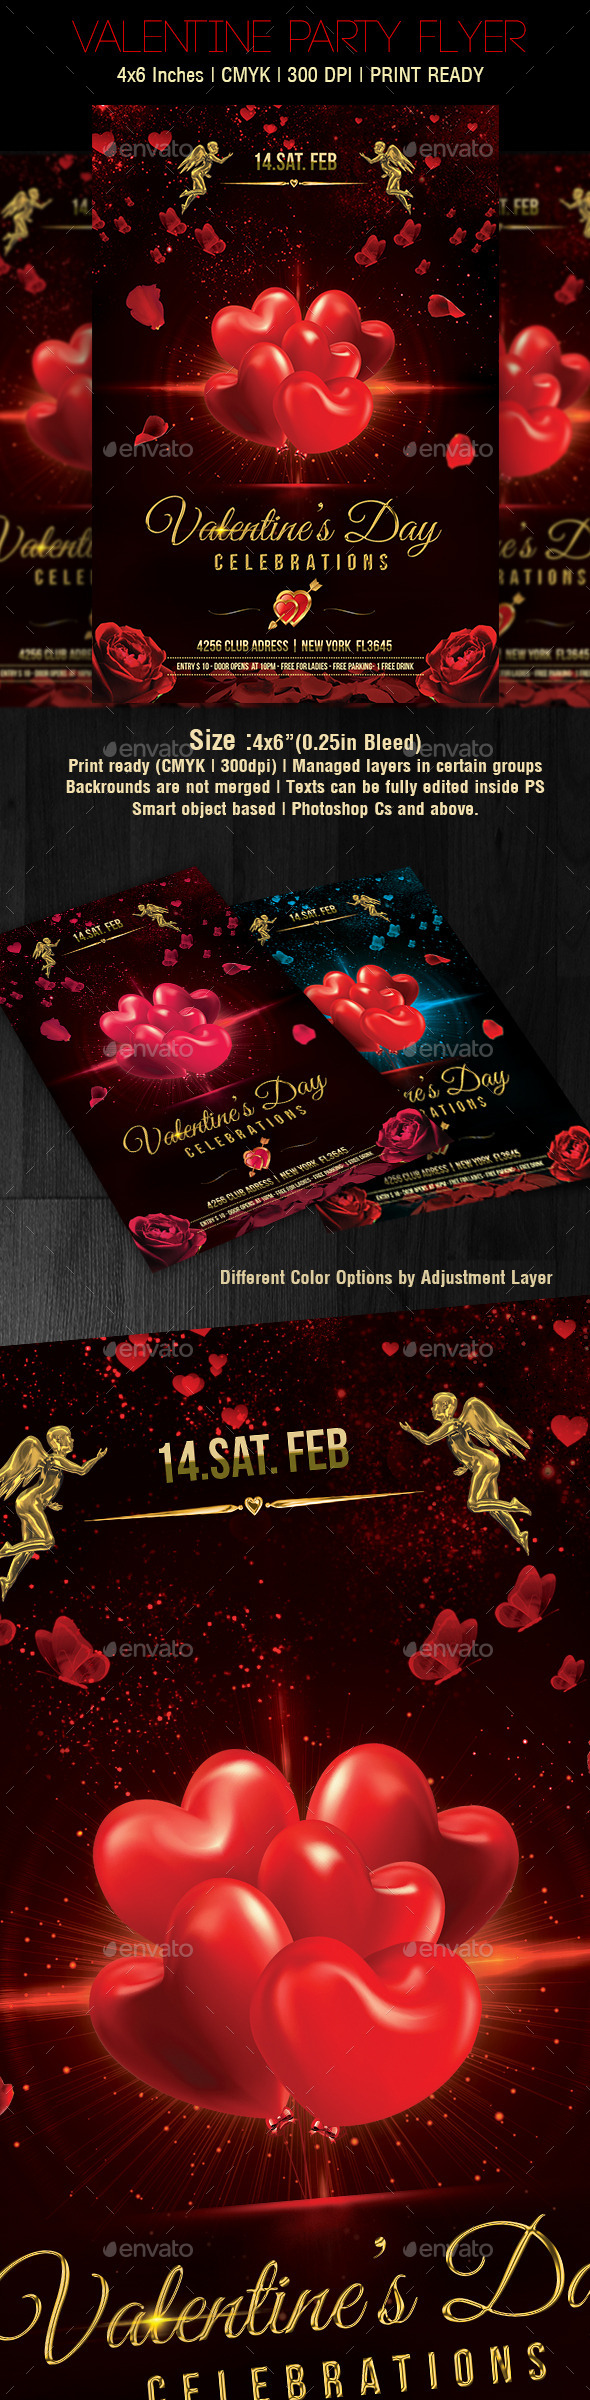 Valentines Day Flyer v5